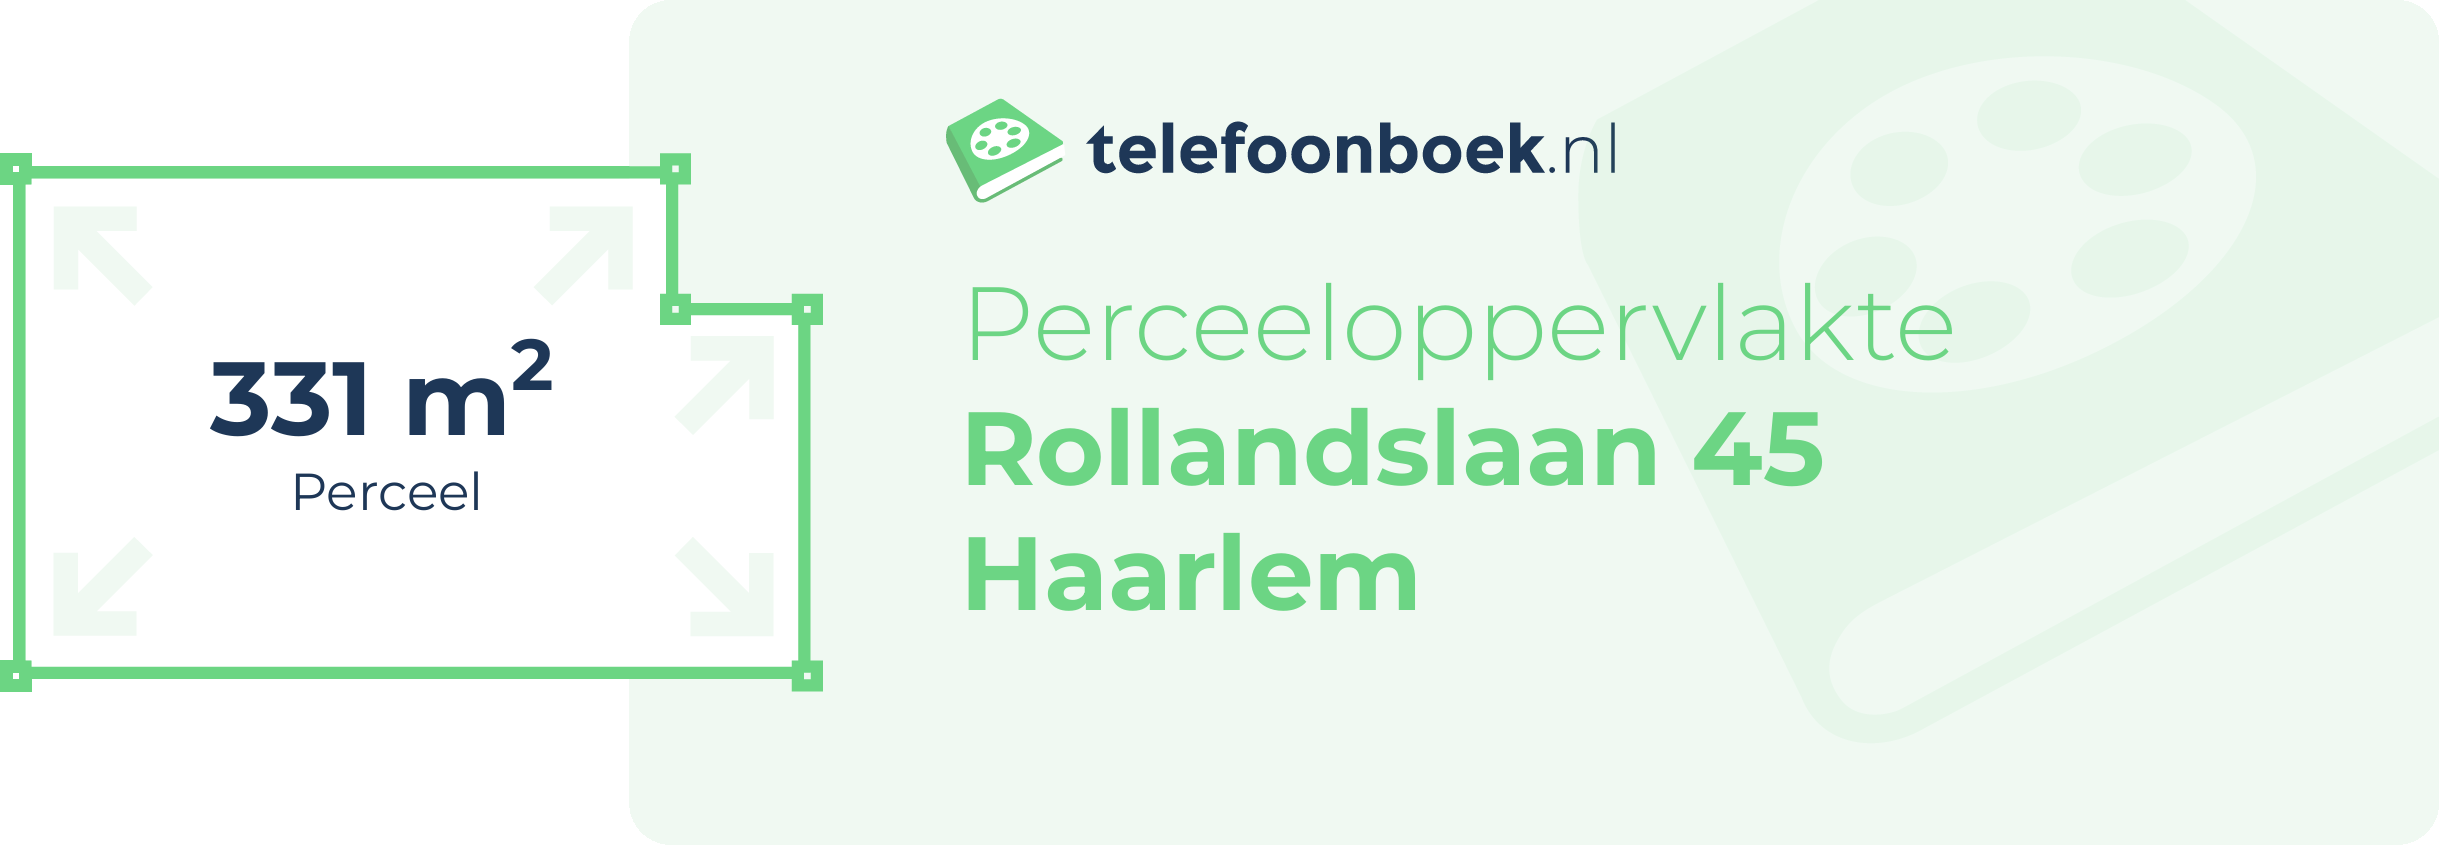 Perceeloppervlakte Rollandslaan 45 Haarlem